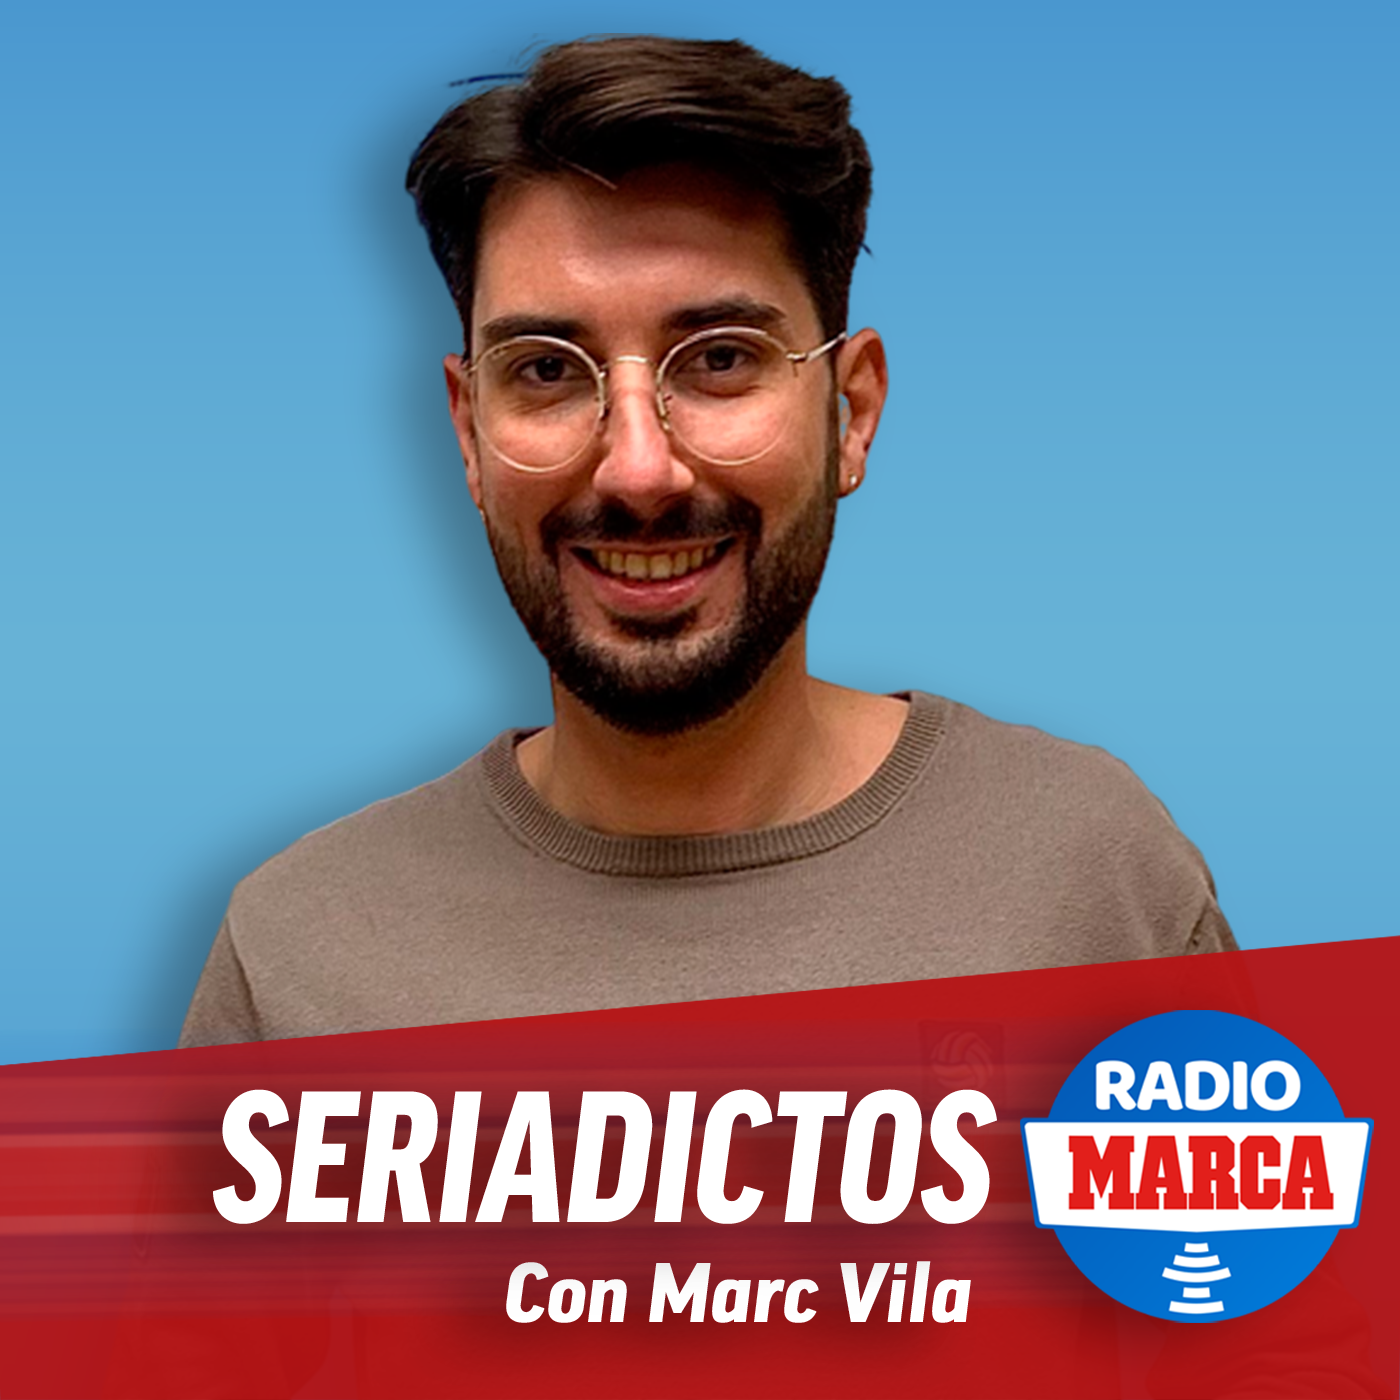 Seriadictos - Podcast de SERIES en Radio Marca